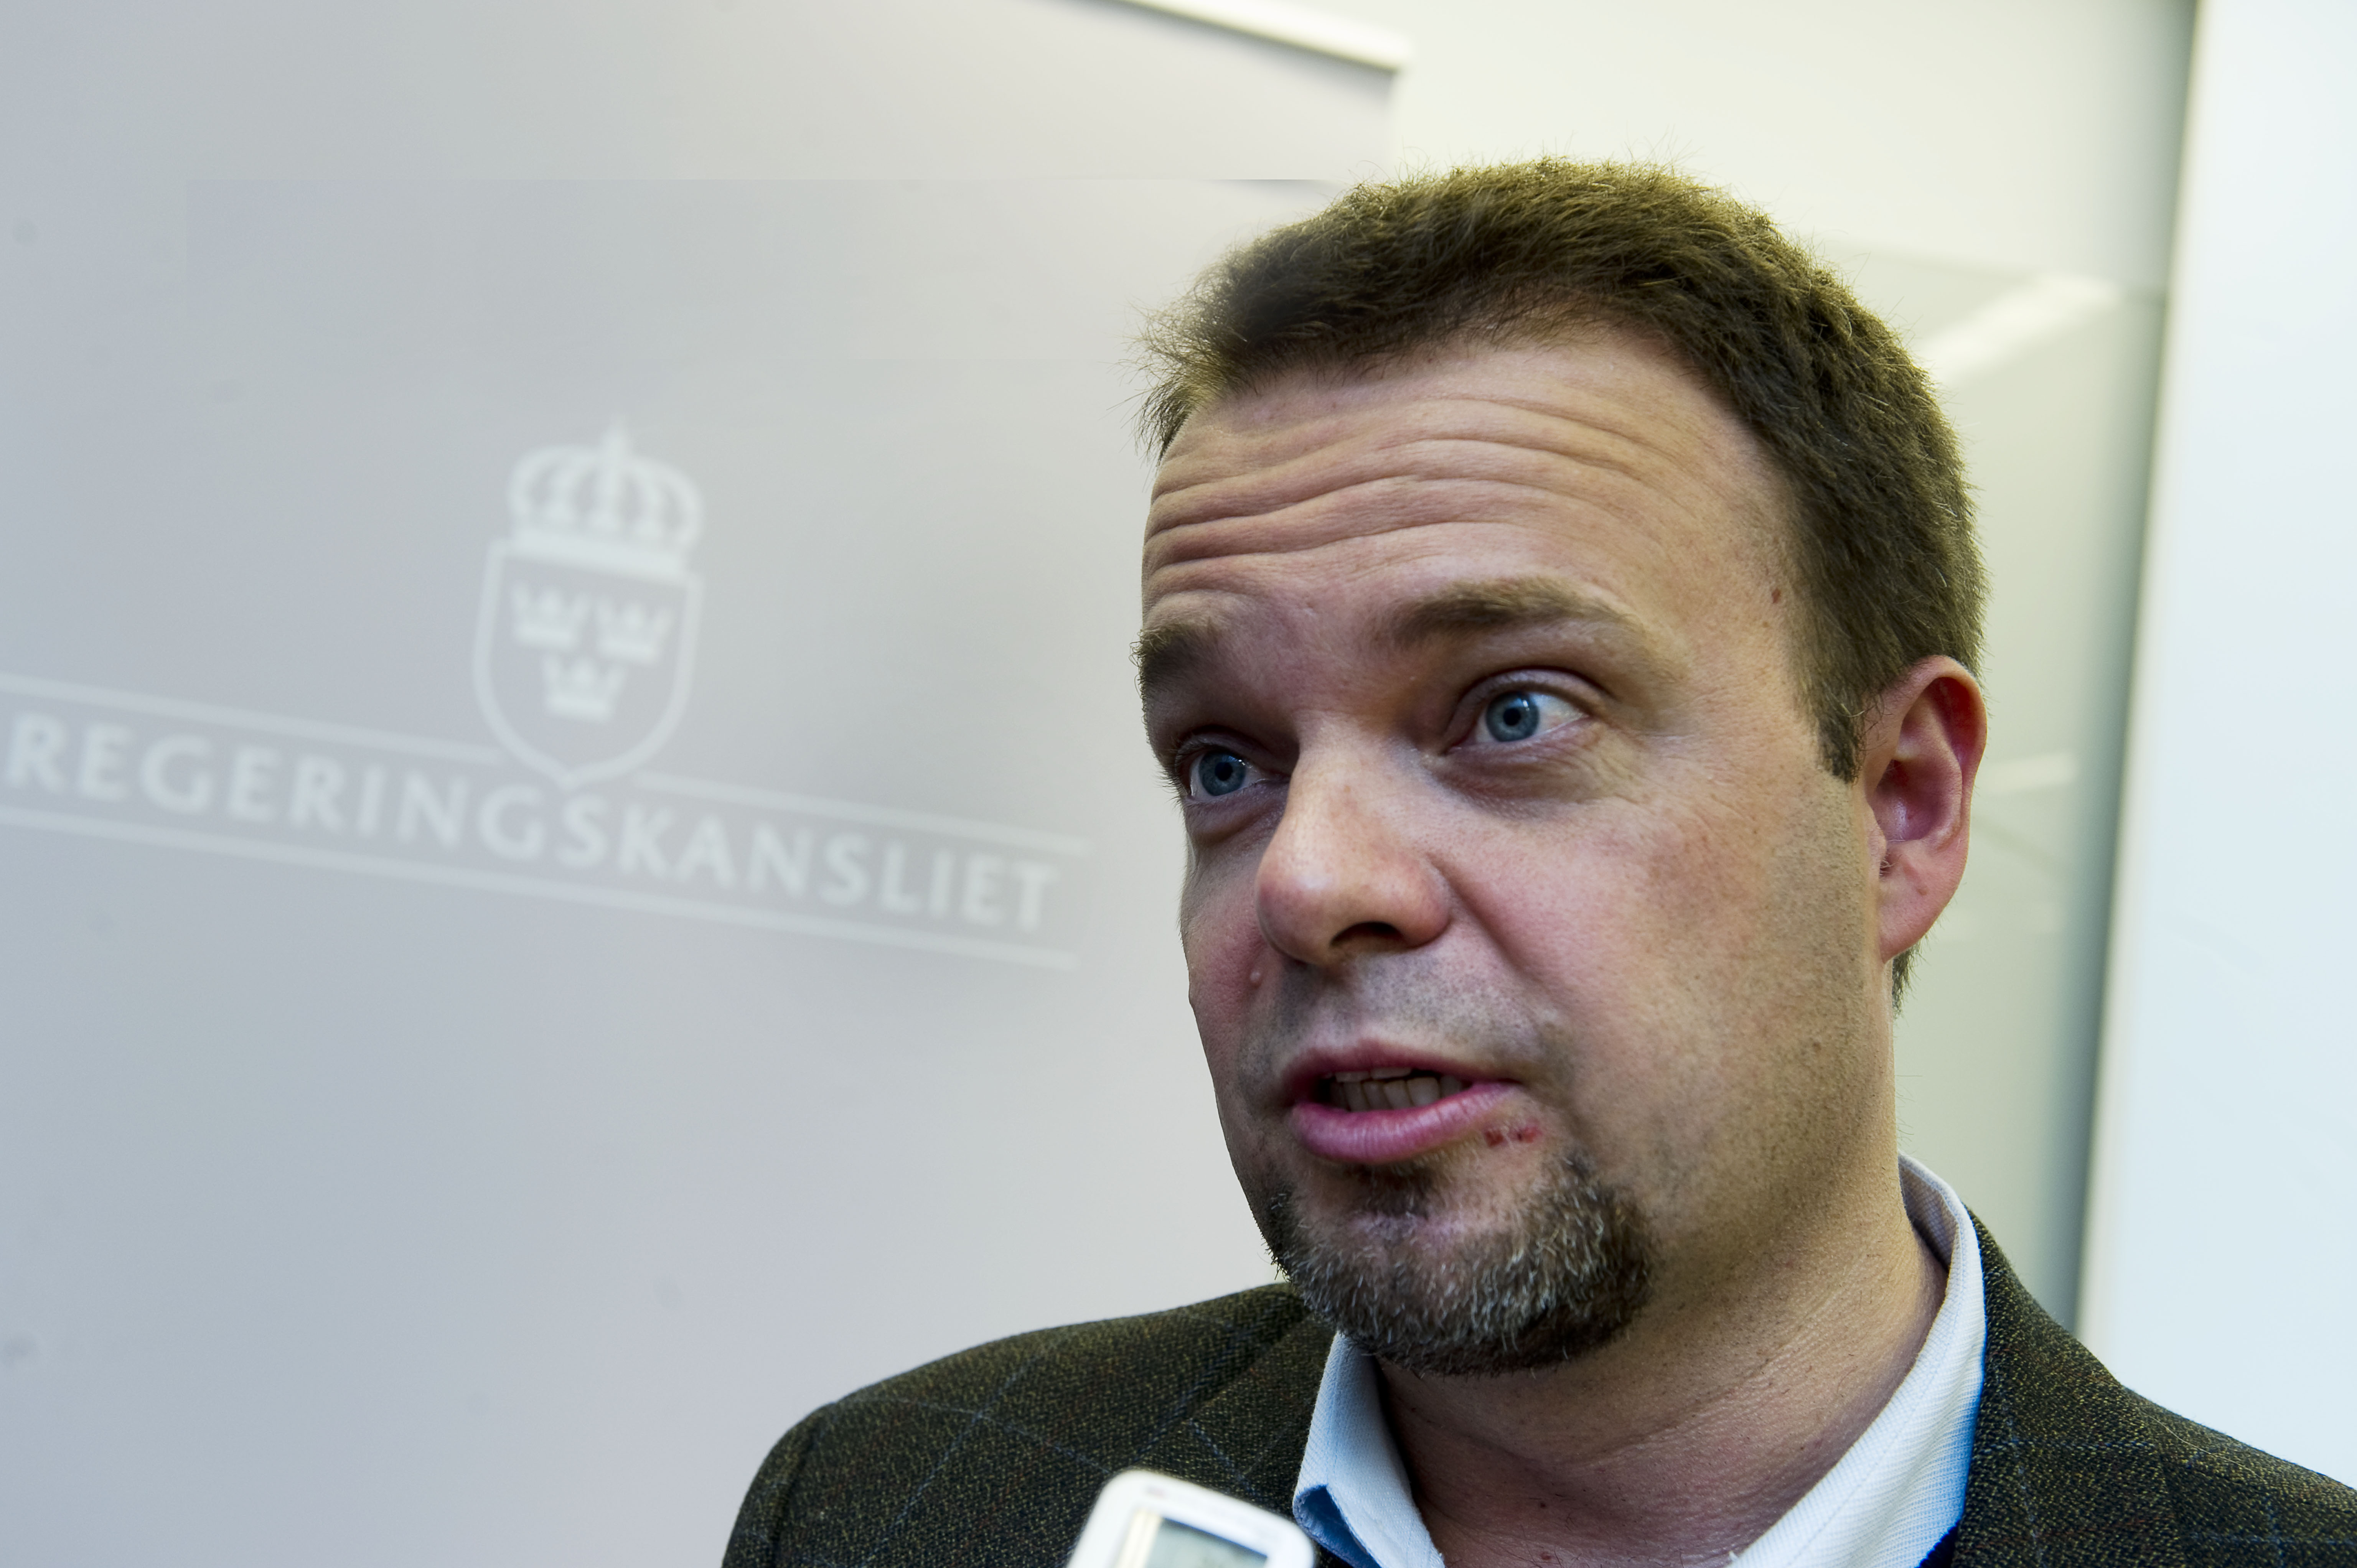 Jobb, Riksdagsvalet 2010, Politik, Sven Otto Littorin, Register, Alliansen, Ungdomsarbetslöshet